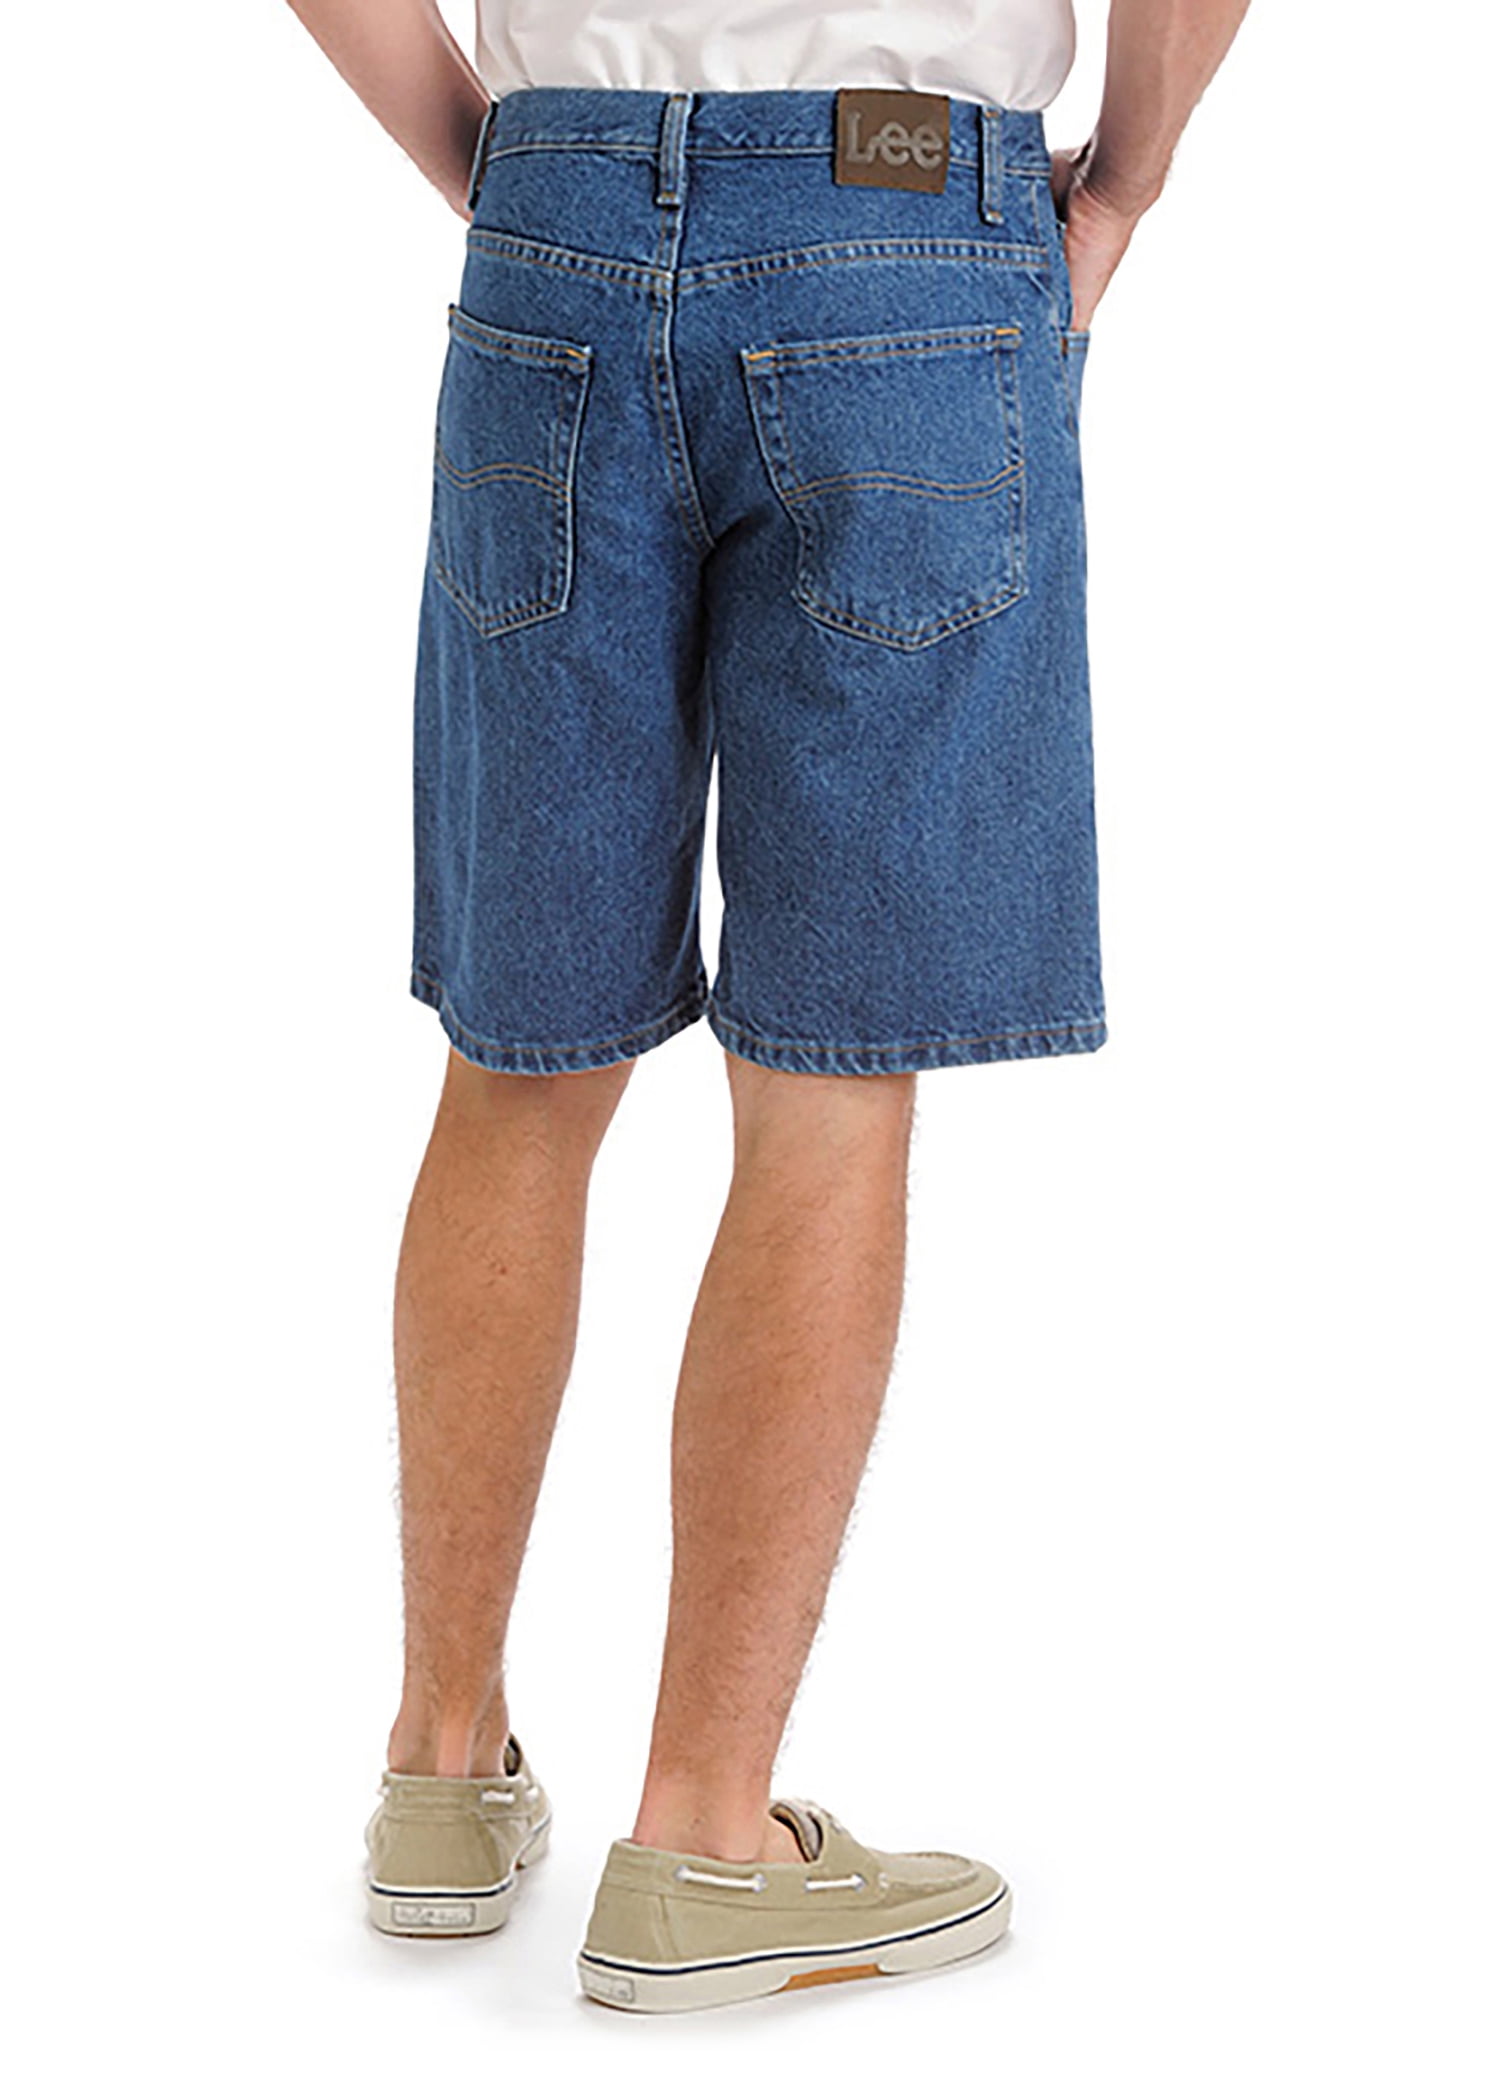 Lee Men's Regular Fit Jean Shorts 